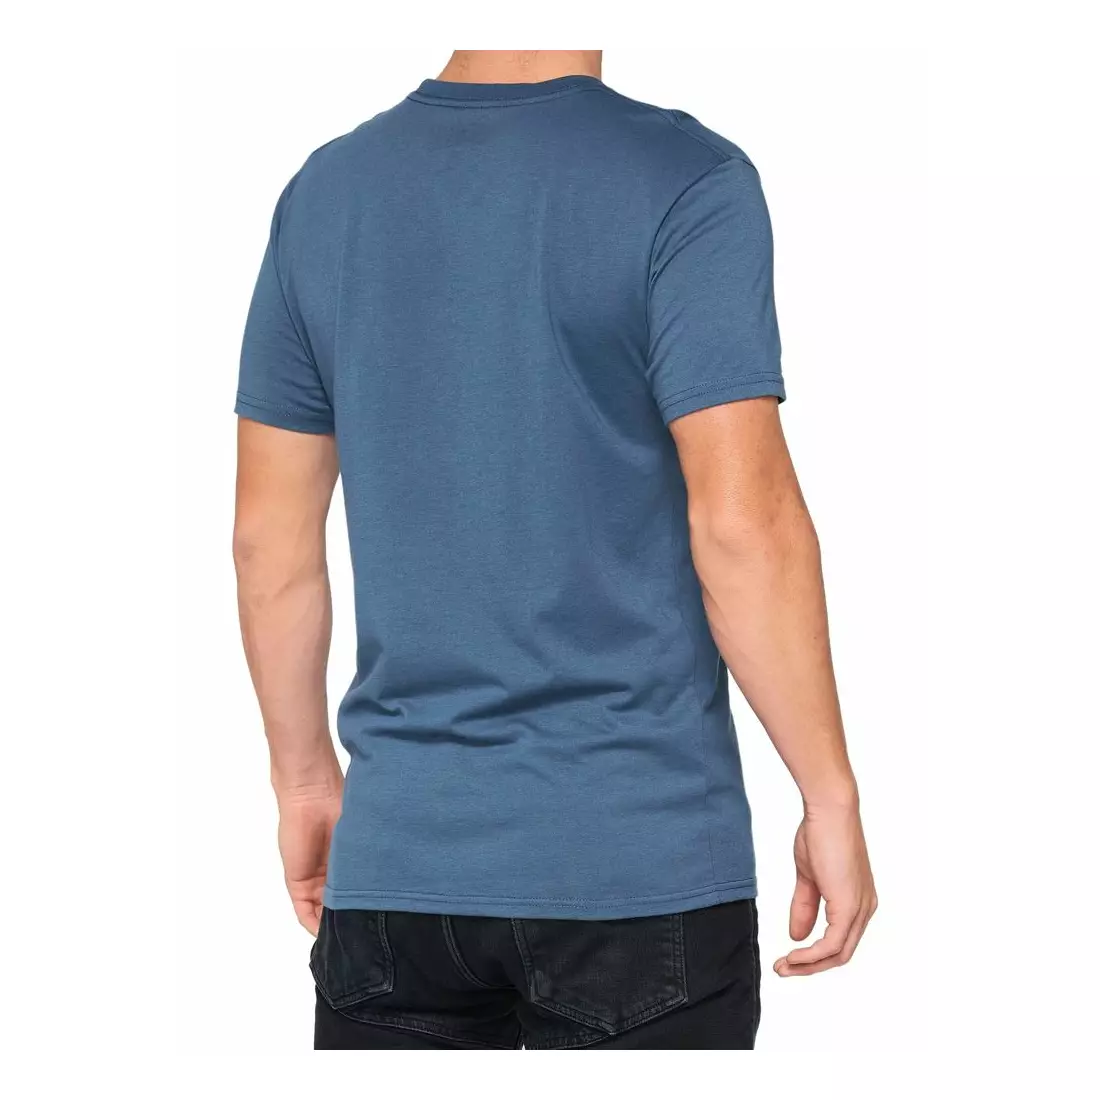 100% pánské sportovní tričko s krátkým rukávem KRAMER slate 